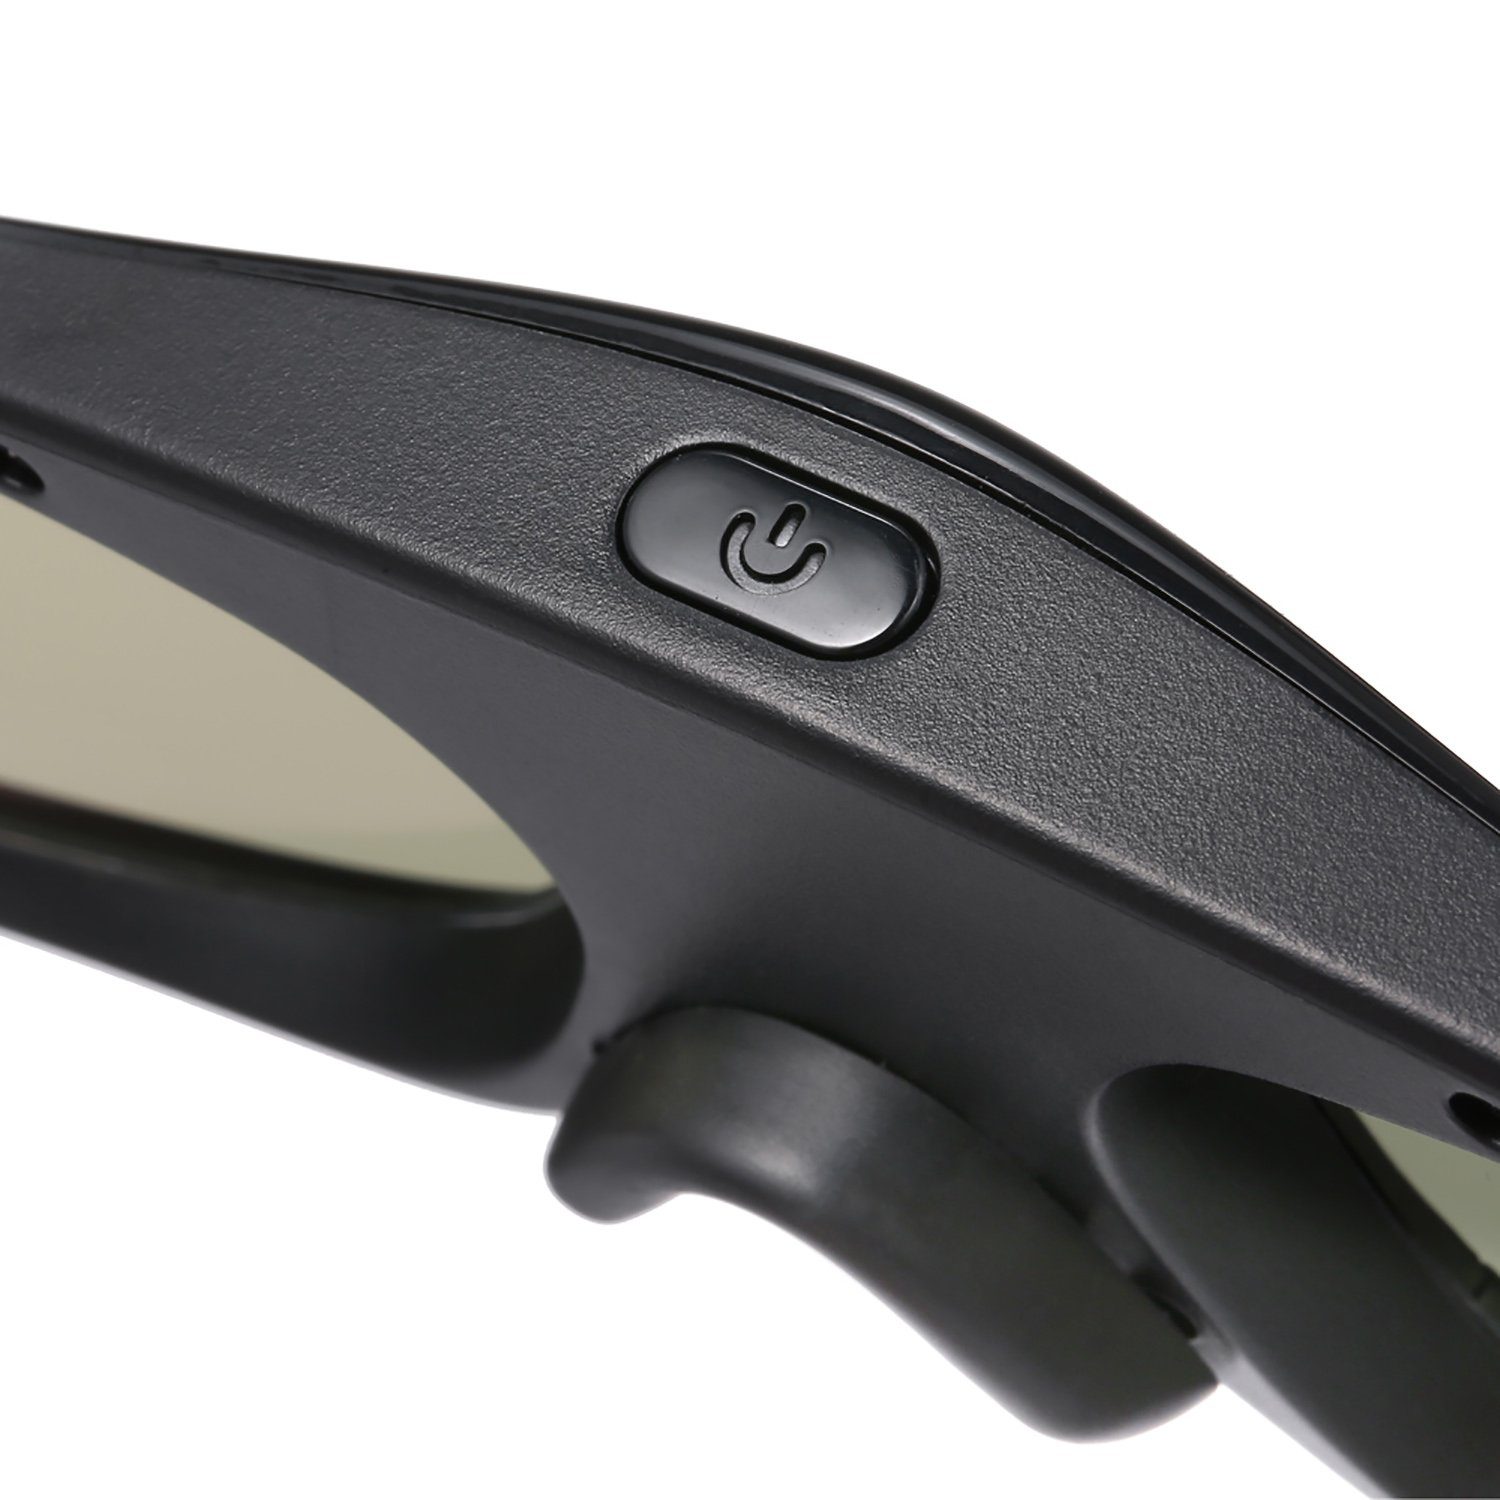 TPFNet 3D-Brille Aktive Shutterbrille kompatibel 3D DLP Link Brille, wiederaufladbare Beamer, - DLP - Stück Schwarz mit 3D 5